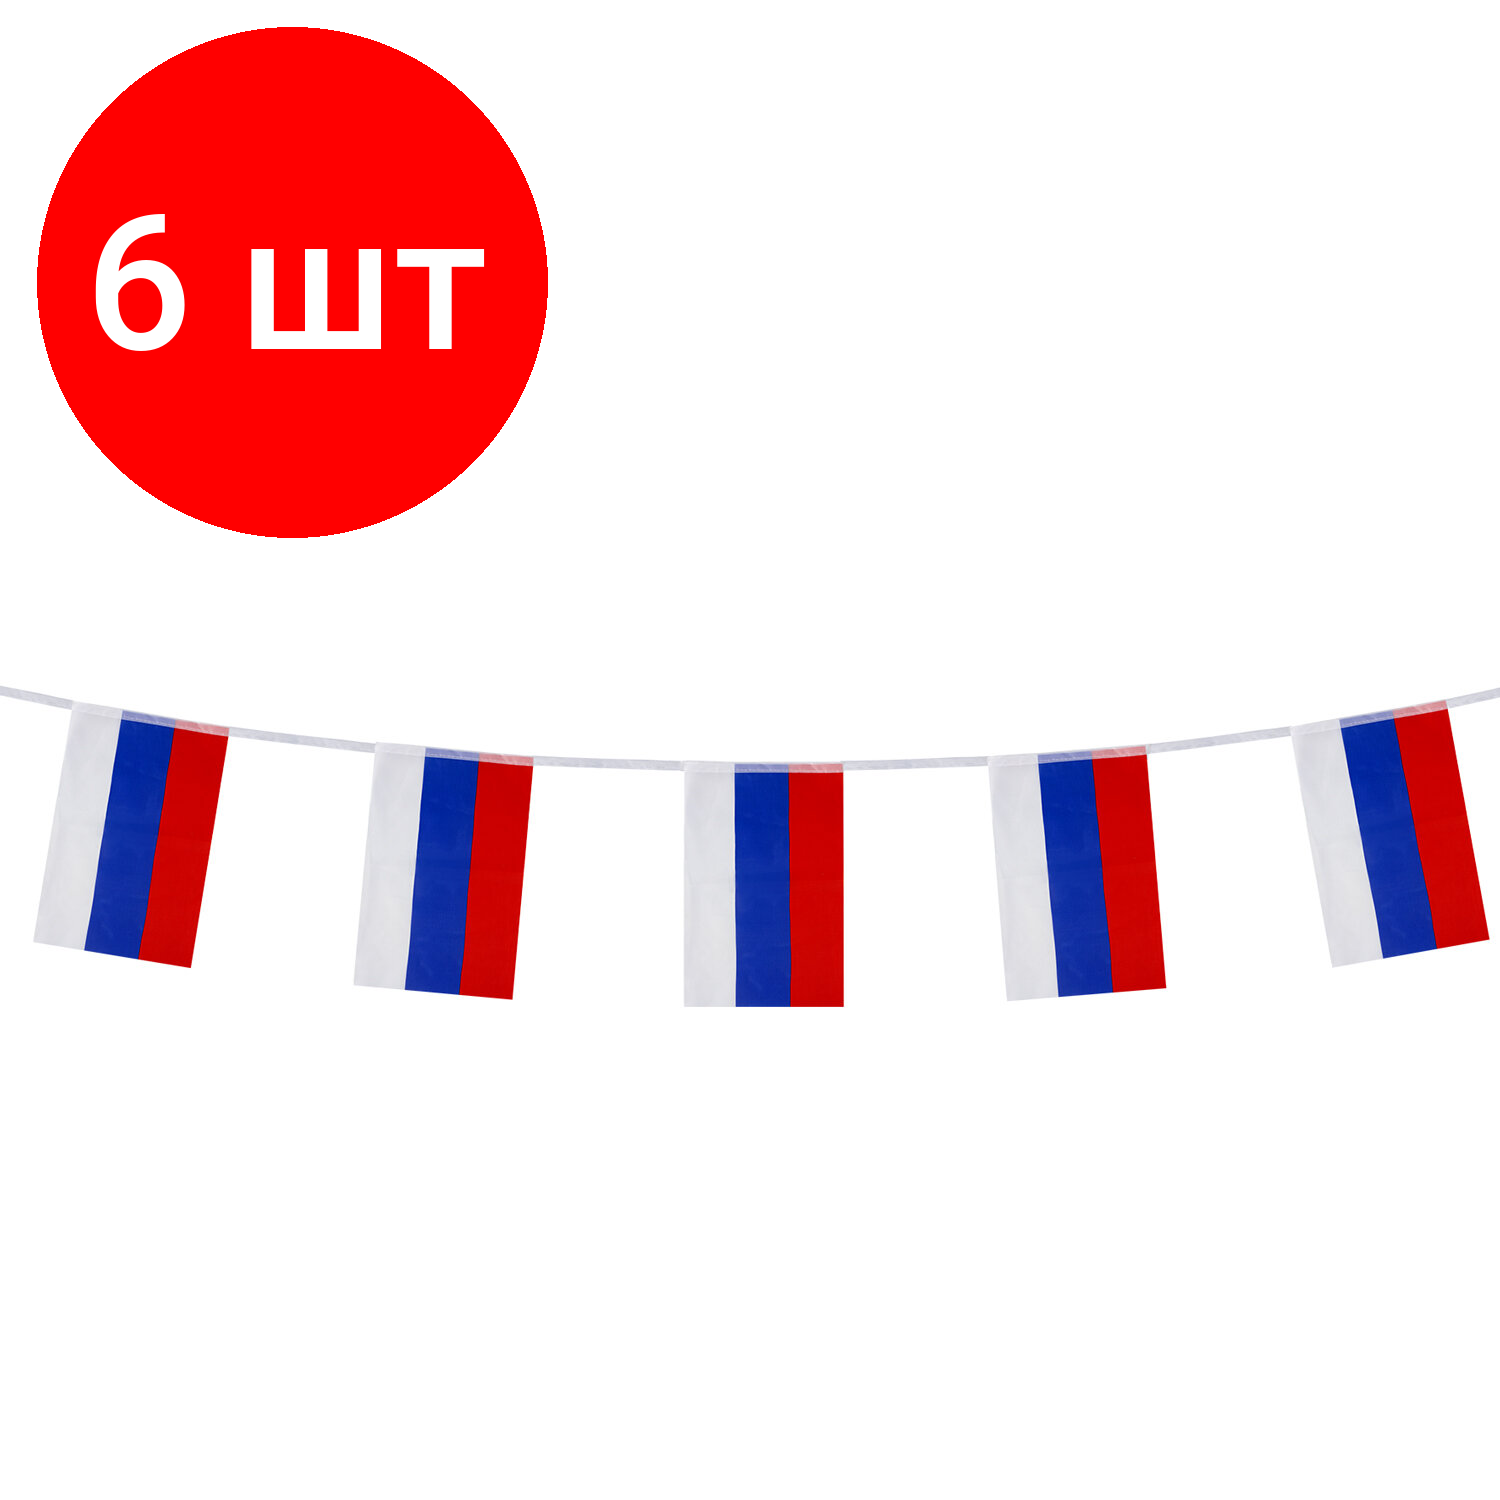 Комплект 6 шт, Гирлянда из флагов России, длина 5 м, 10 прямоугольных флажков 20х30 см, BRAUBERG, 550185, RU25